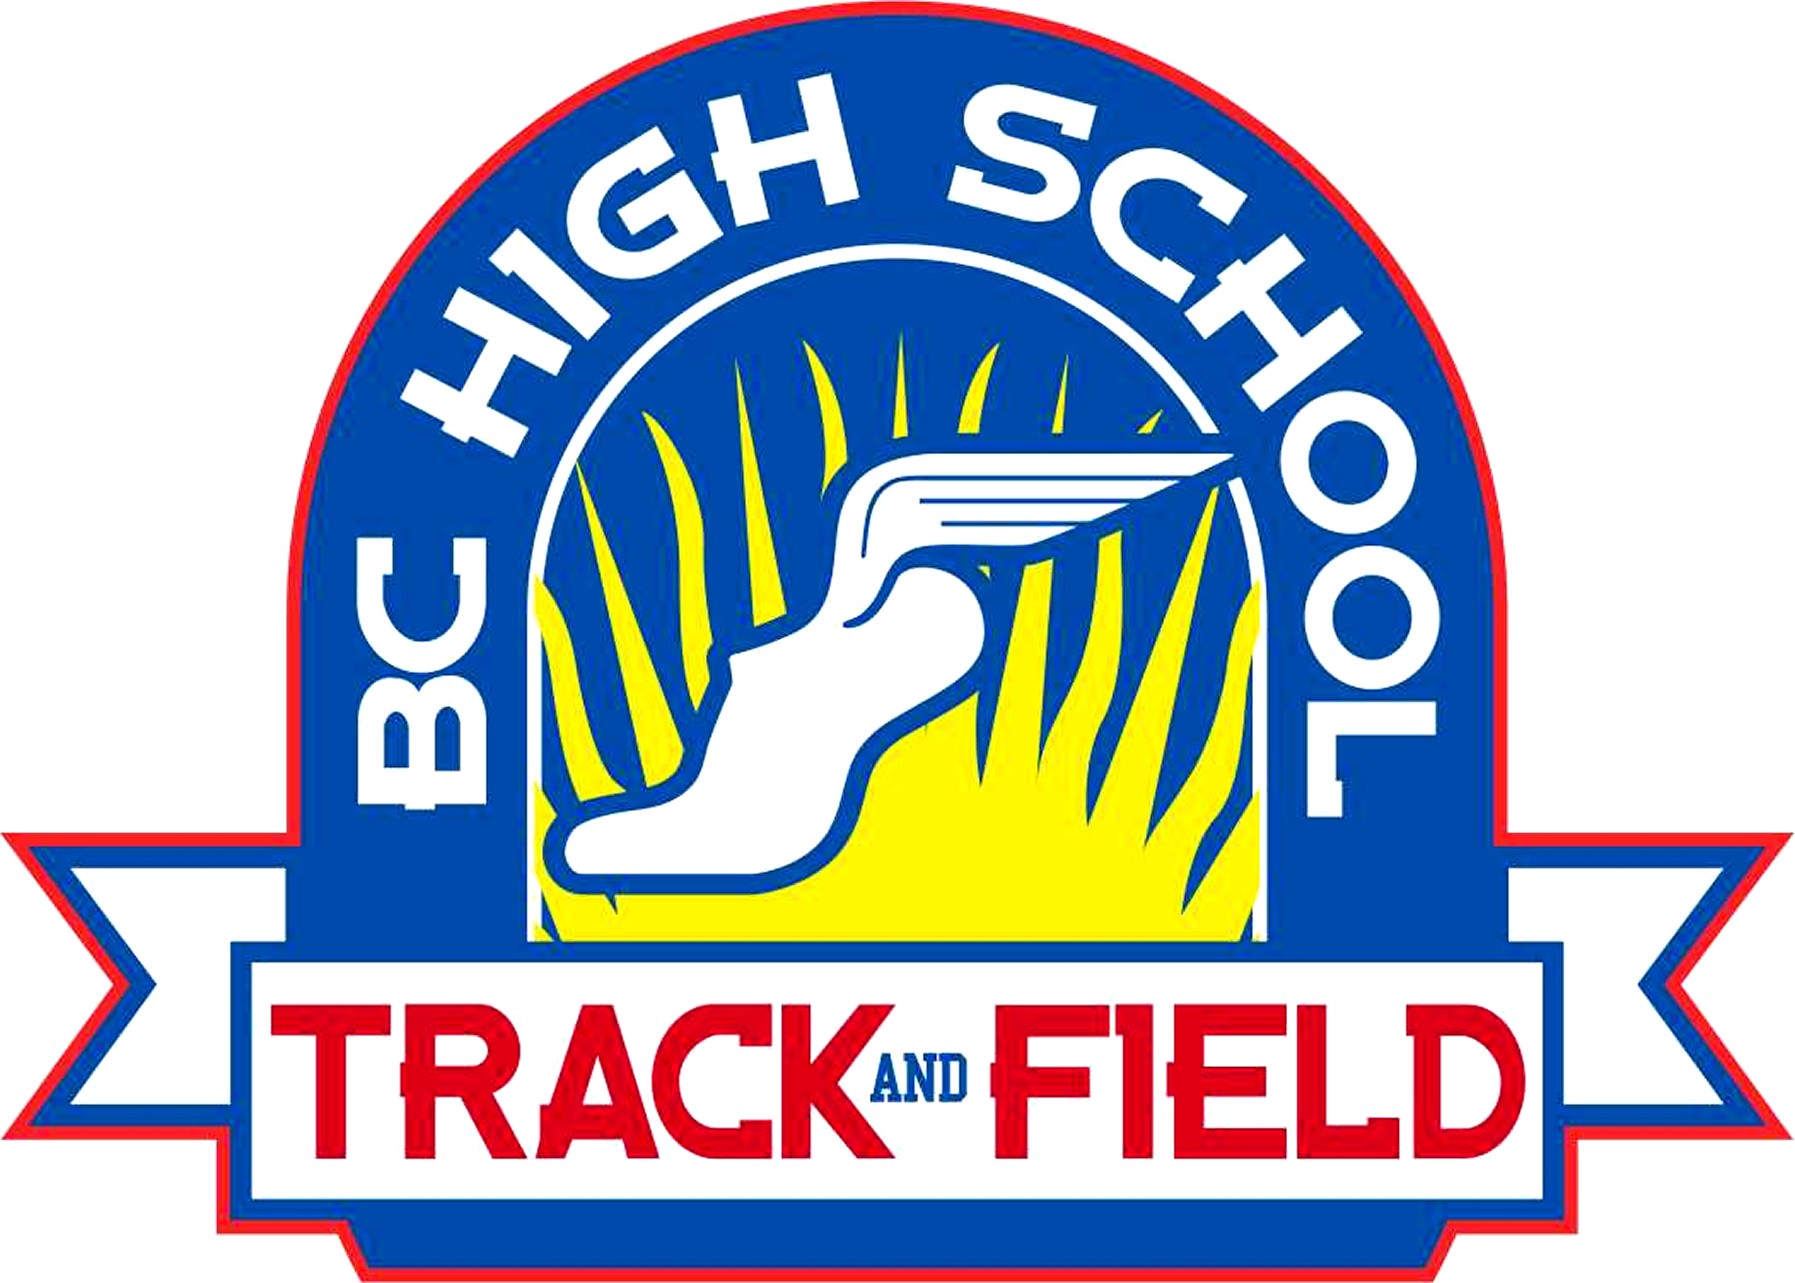 Track & Field - Sports (1795x1283)